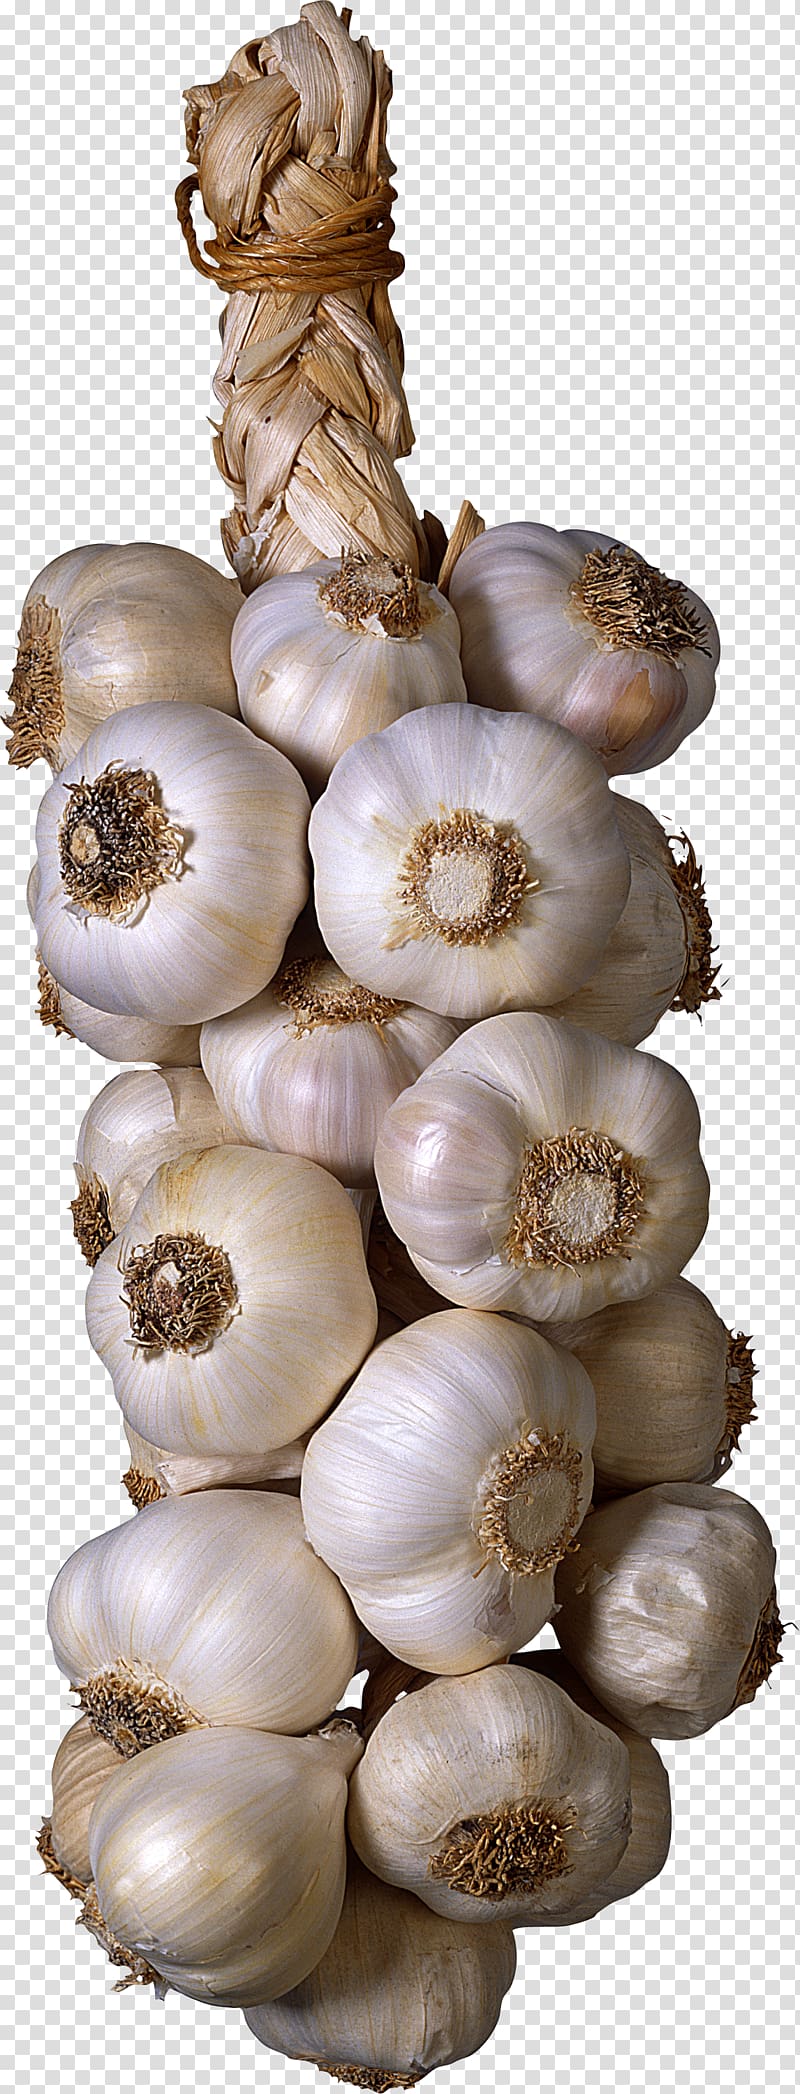 Garlic Vegetable Seasoning , garlic transparent background PNG clipart